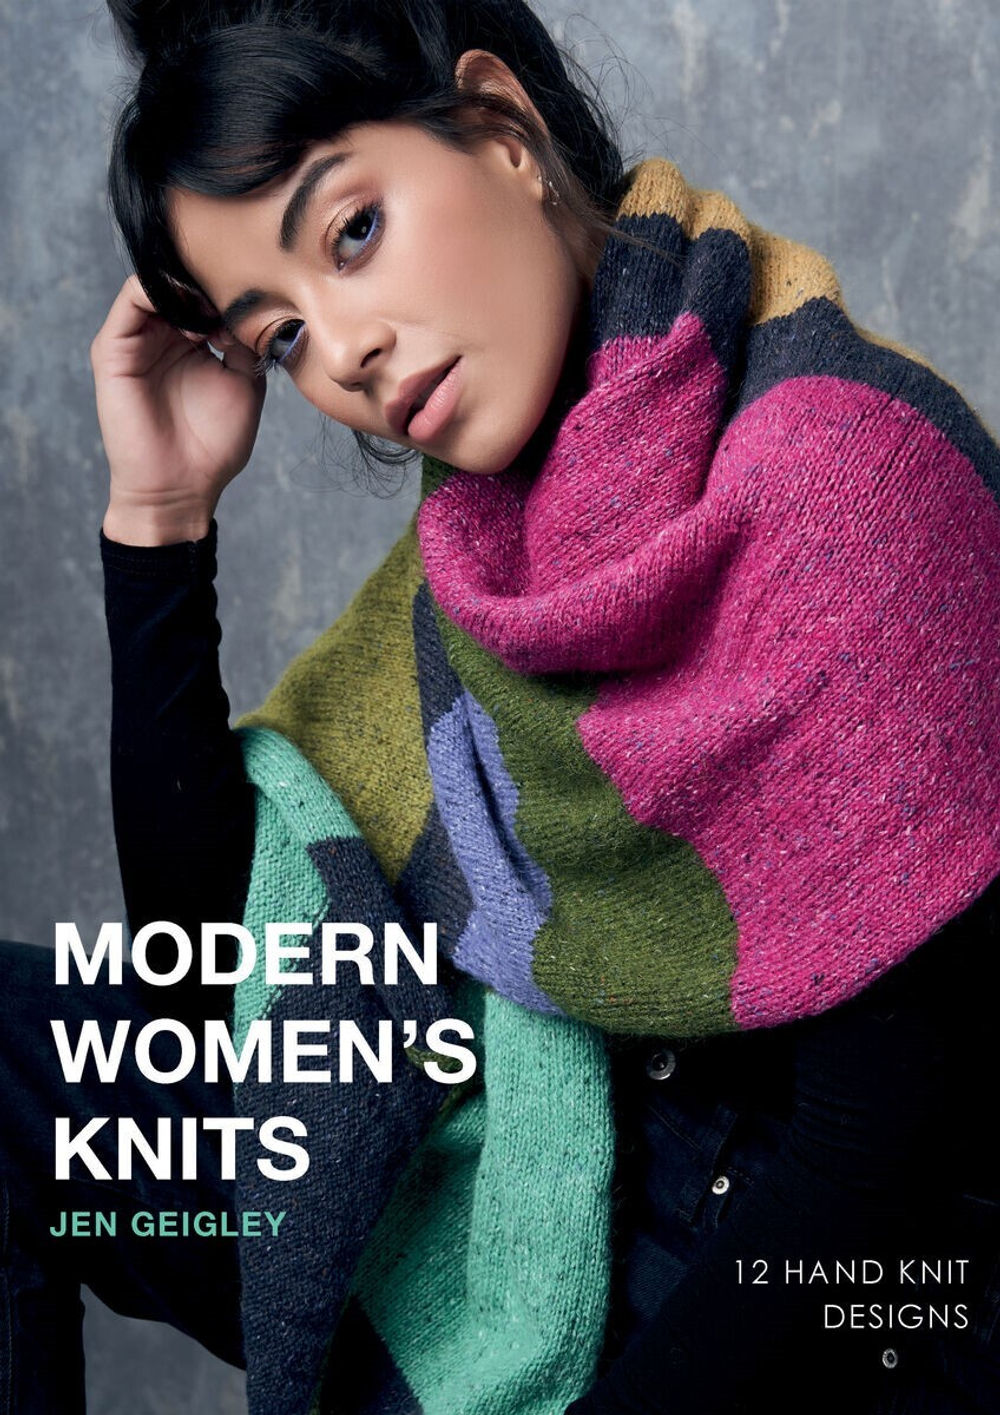 Книга Rowan "Modern Womens Knits" /Современный женский трикотаж/, дизайнер Jen Geigley, 12 моделей,